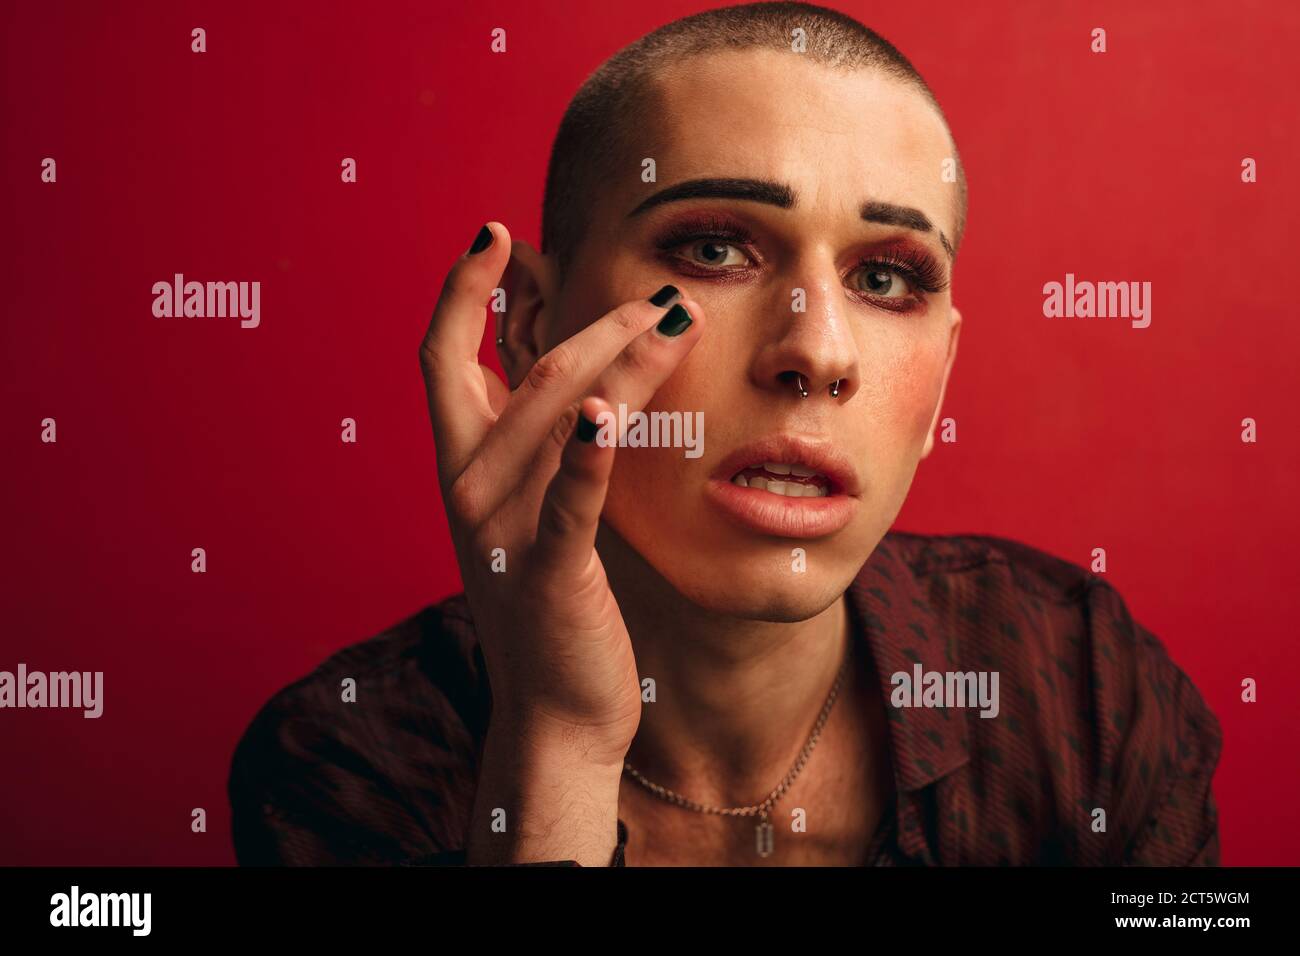 Homme transgenre mettant le maquillage sur fond rouge. Homme avec maquillage et perçage du nez regardant la caméra. Banque D'Images